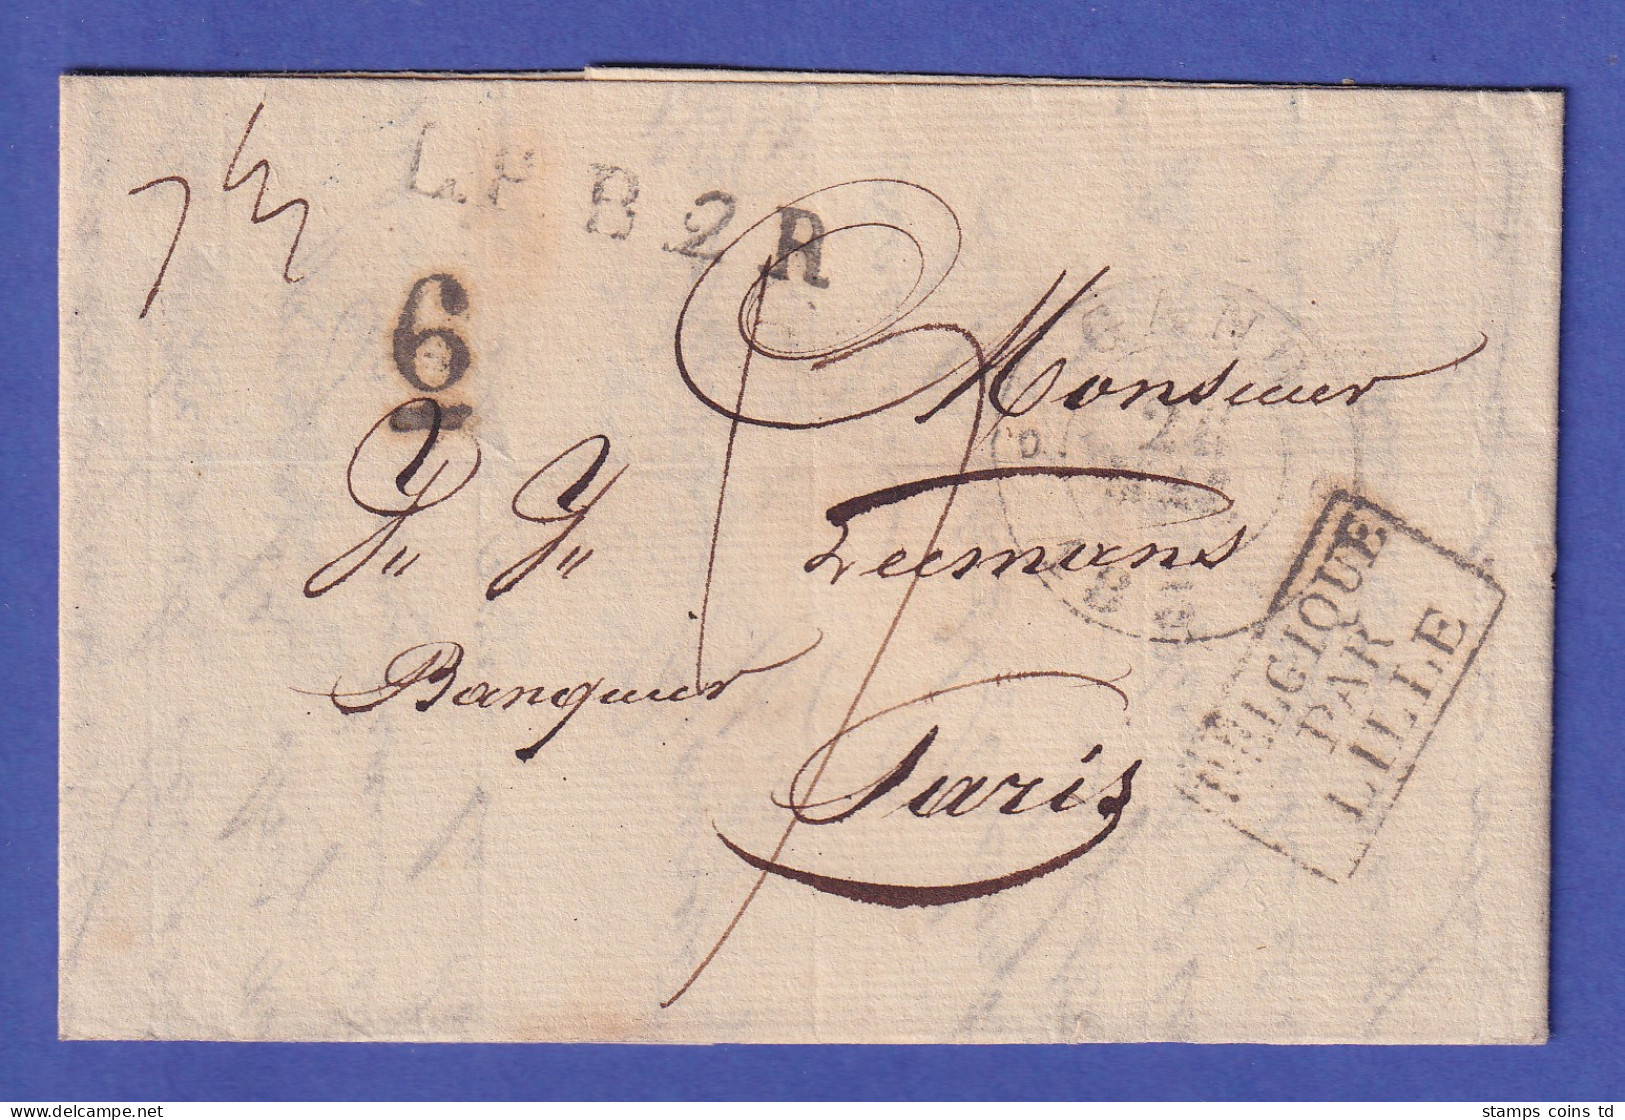 Belgien Vorphila-Brief Mit Zweikreis-O GAND 1835 Und Beförderungs-O Nach Paris - Europe (Other)